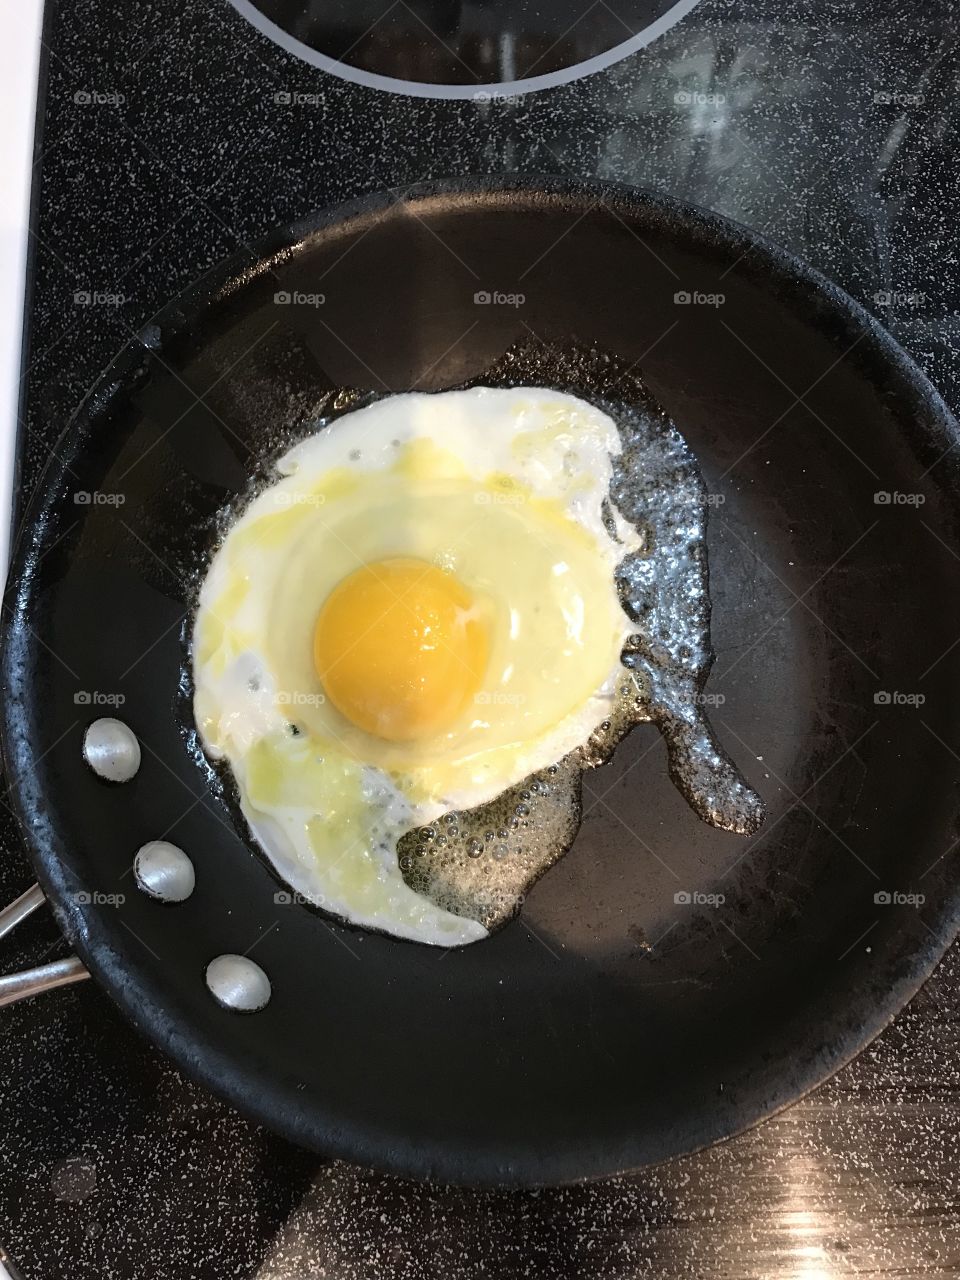 Fry egg